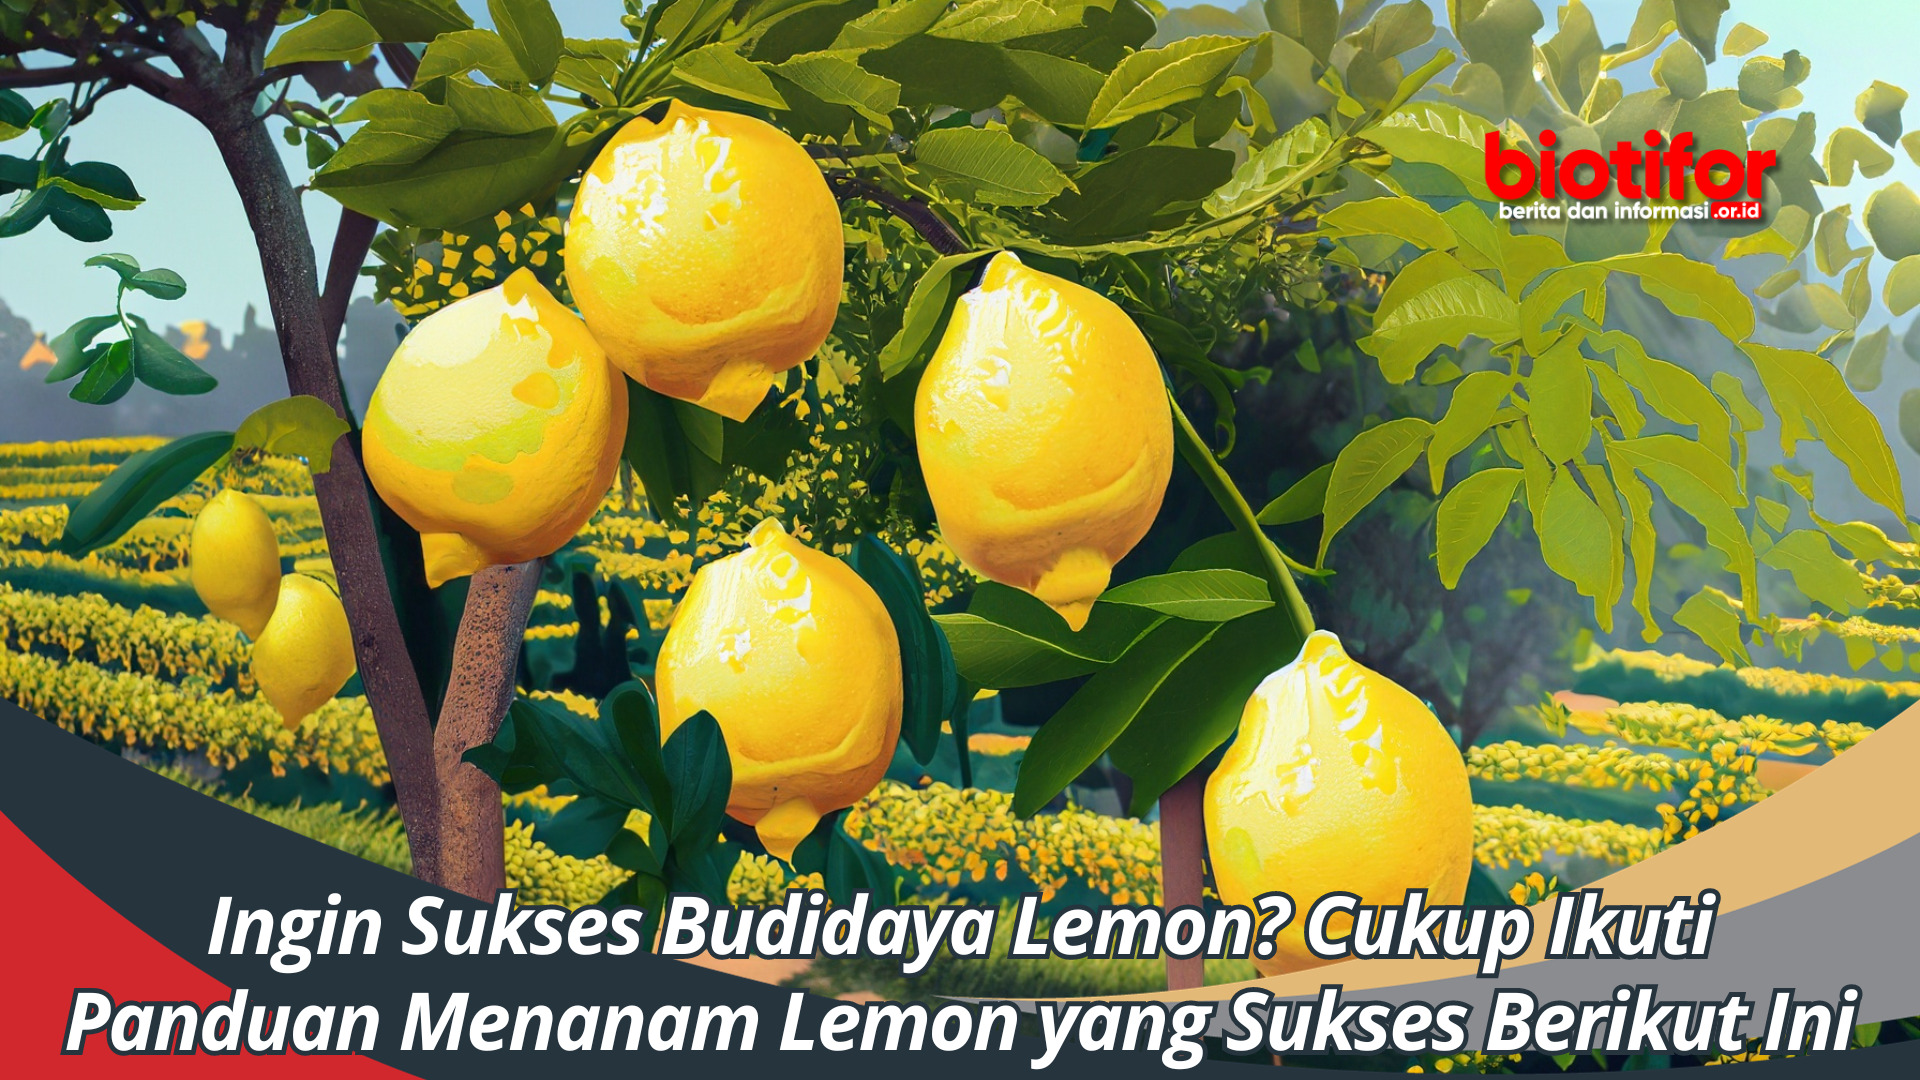 Ingin Sukses Budidaya Lemon Cukup Ikuti Panduan Menanam Lemon yang Sukses Berikut Ini